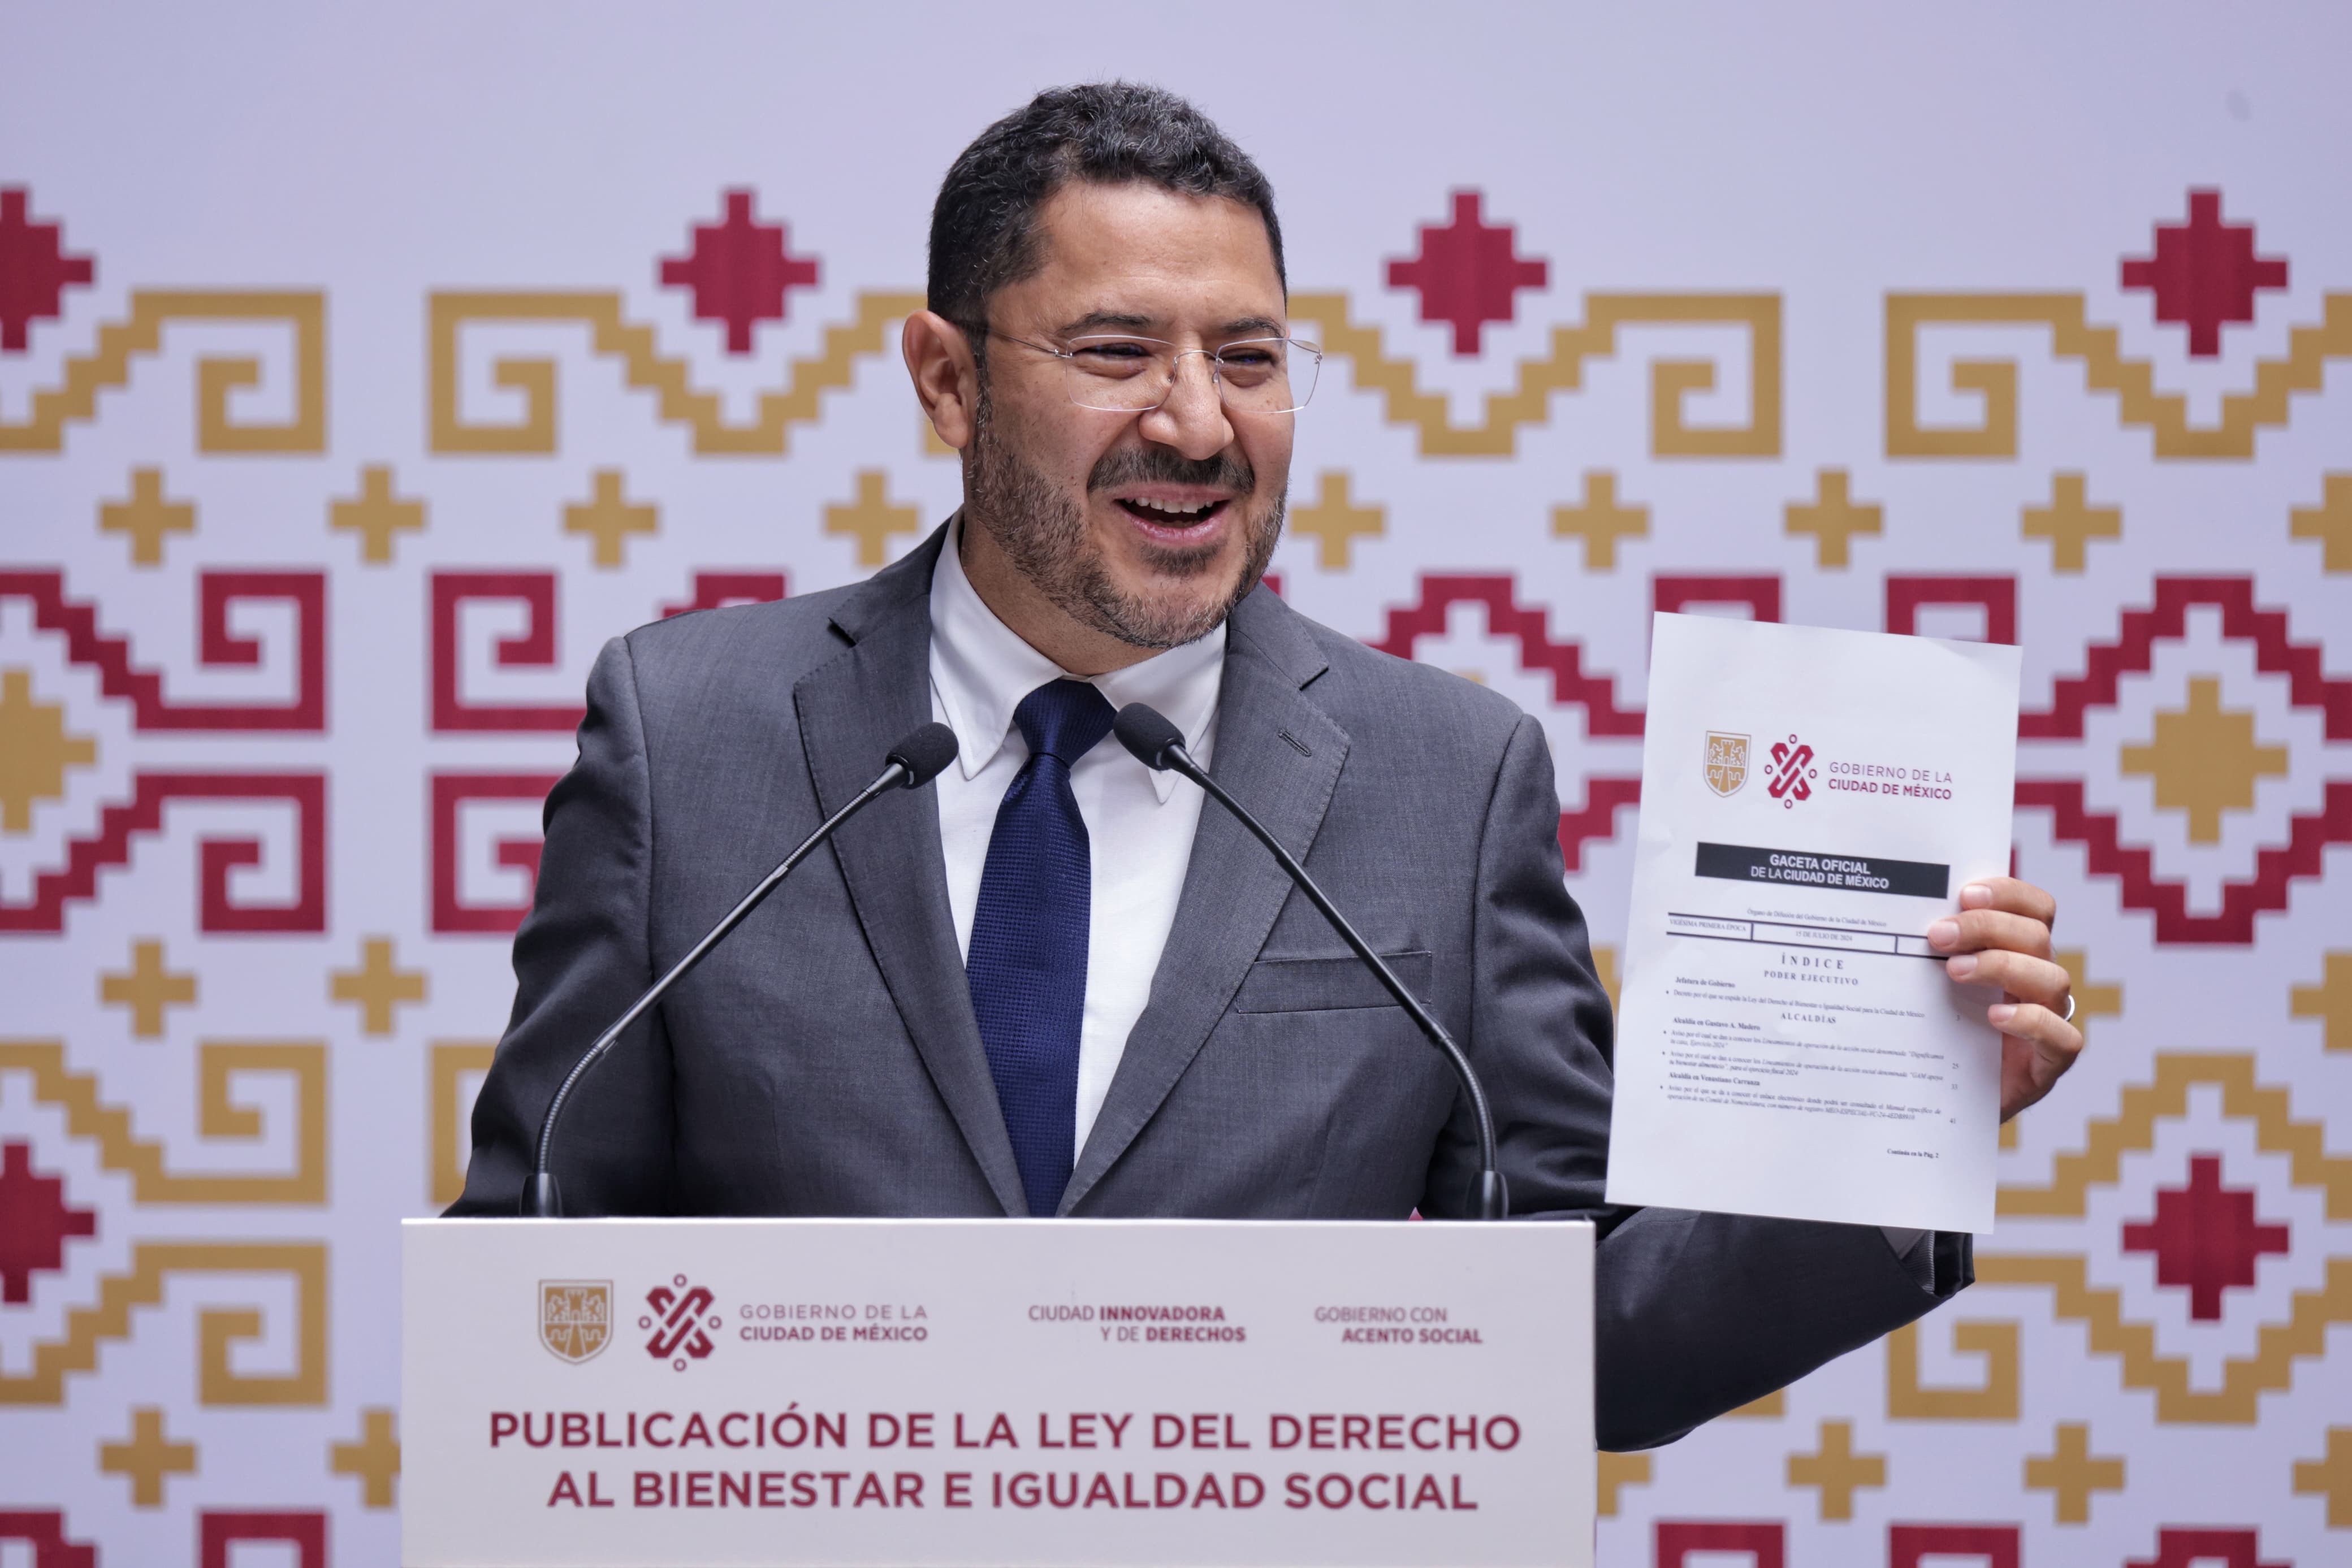 Publica Martí Batres el decreto por el que se expide la Ley del Derecho al Bienestar e Igualdad Social en la CDMX